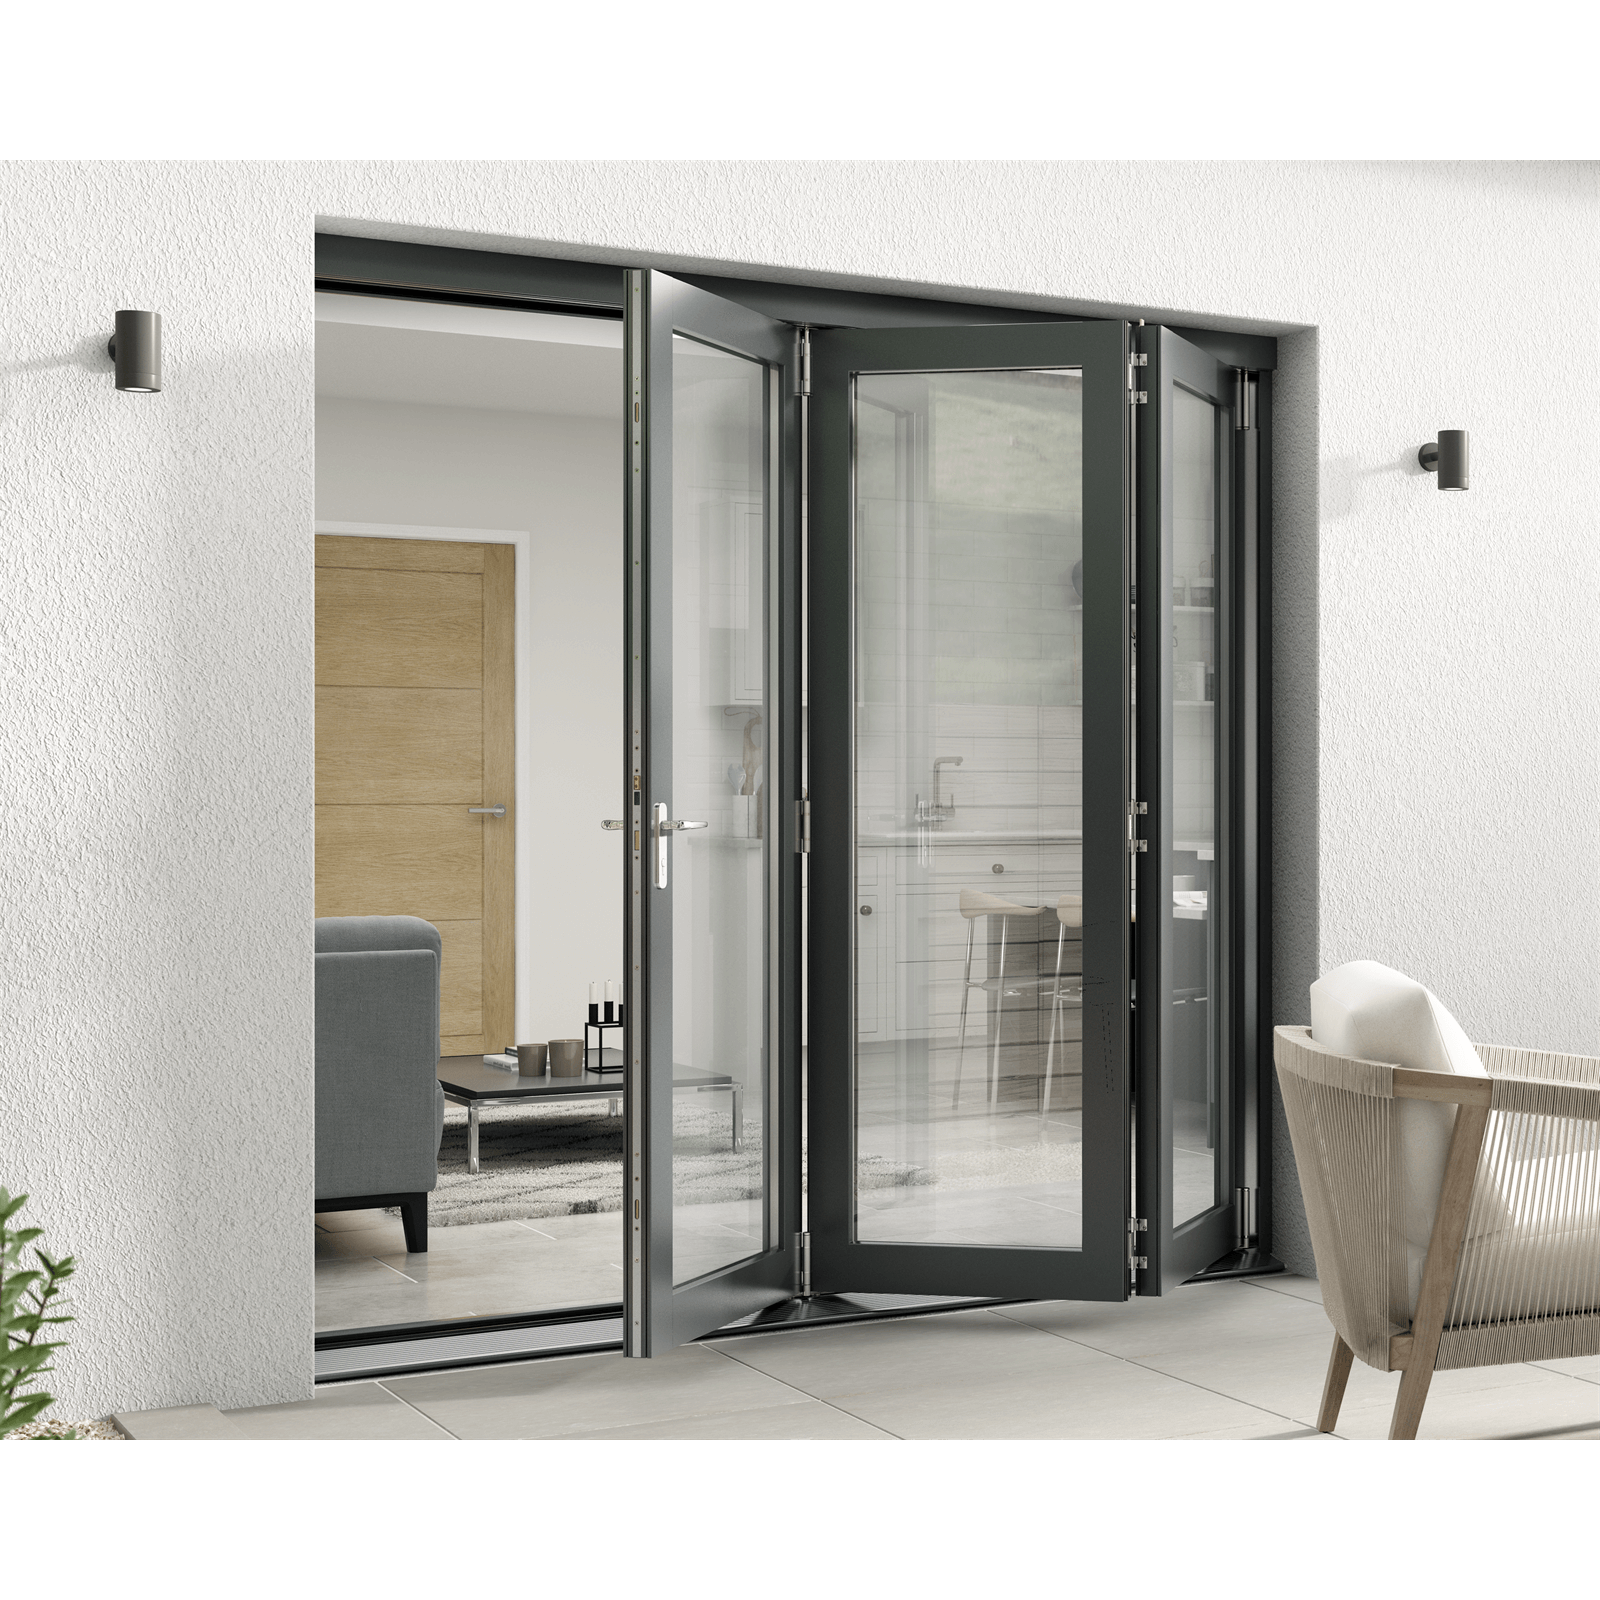 Rohden Slide & Fold Door Set 2100mm - Grey